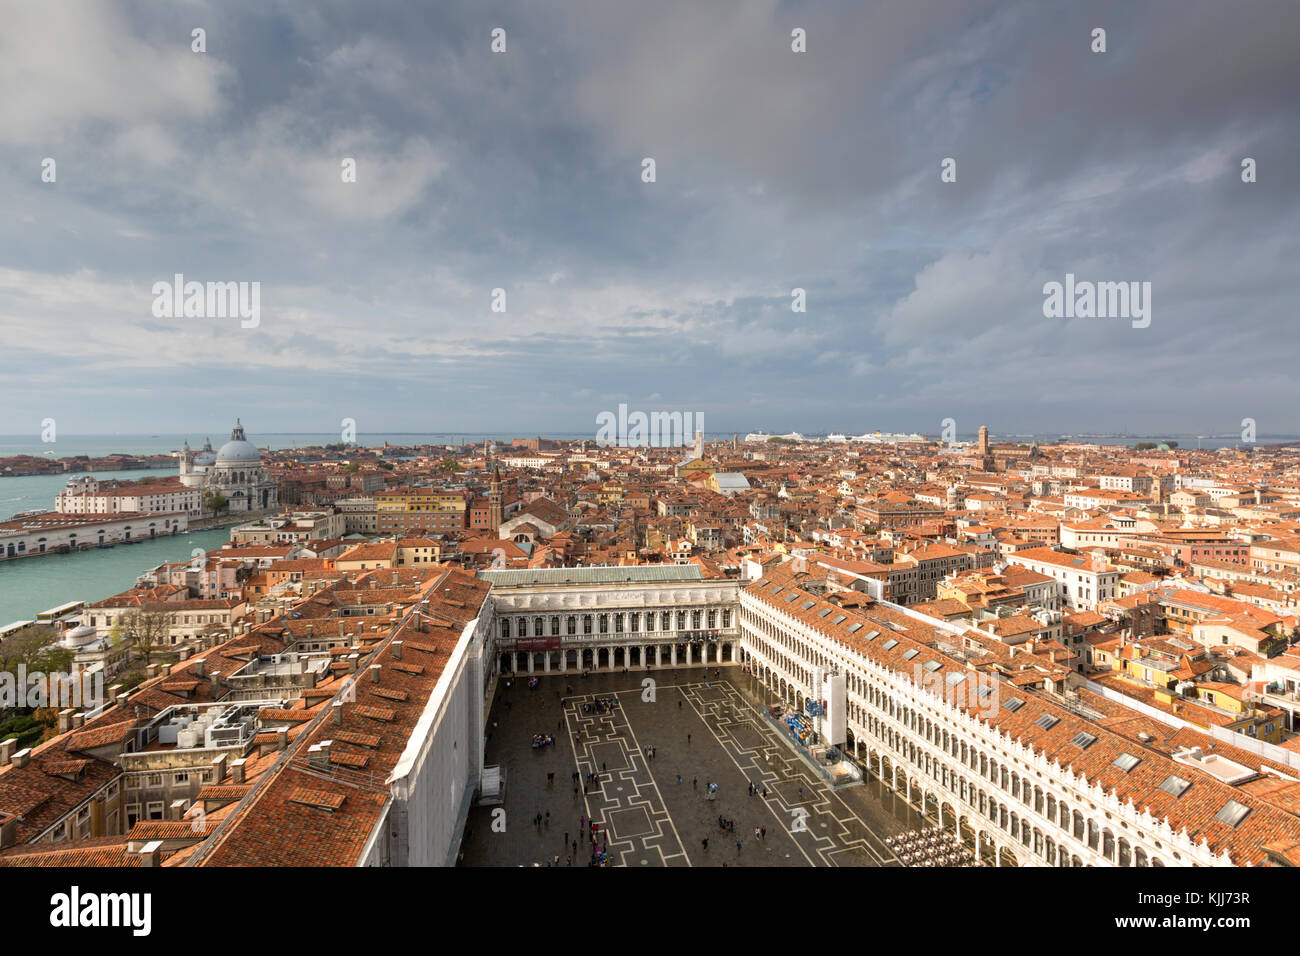 Vista desde el Campanile de la Grand Canal y Santa Maria della Salute mirando al oeste, Venecia, Italia Foto de stock